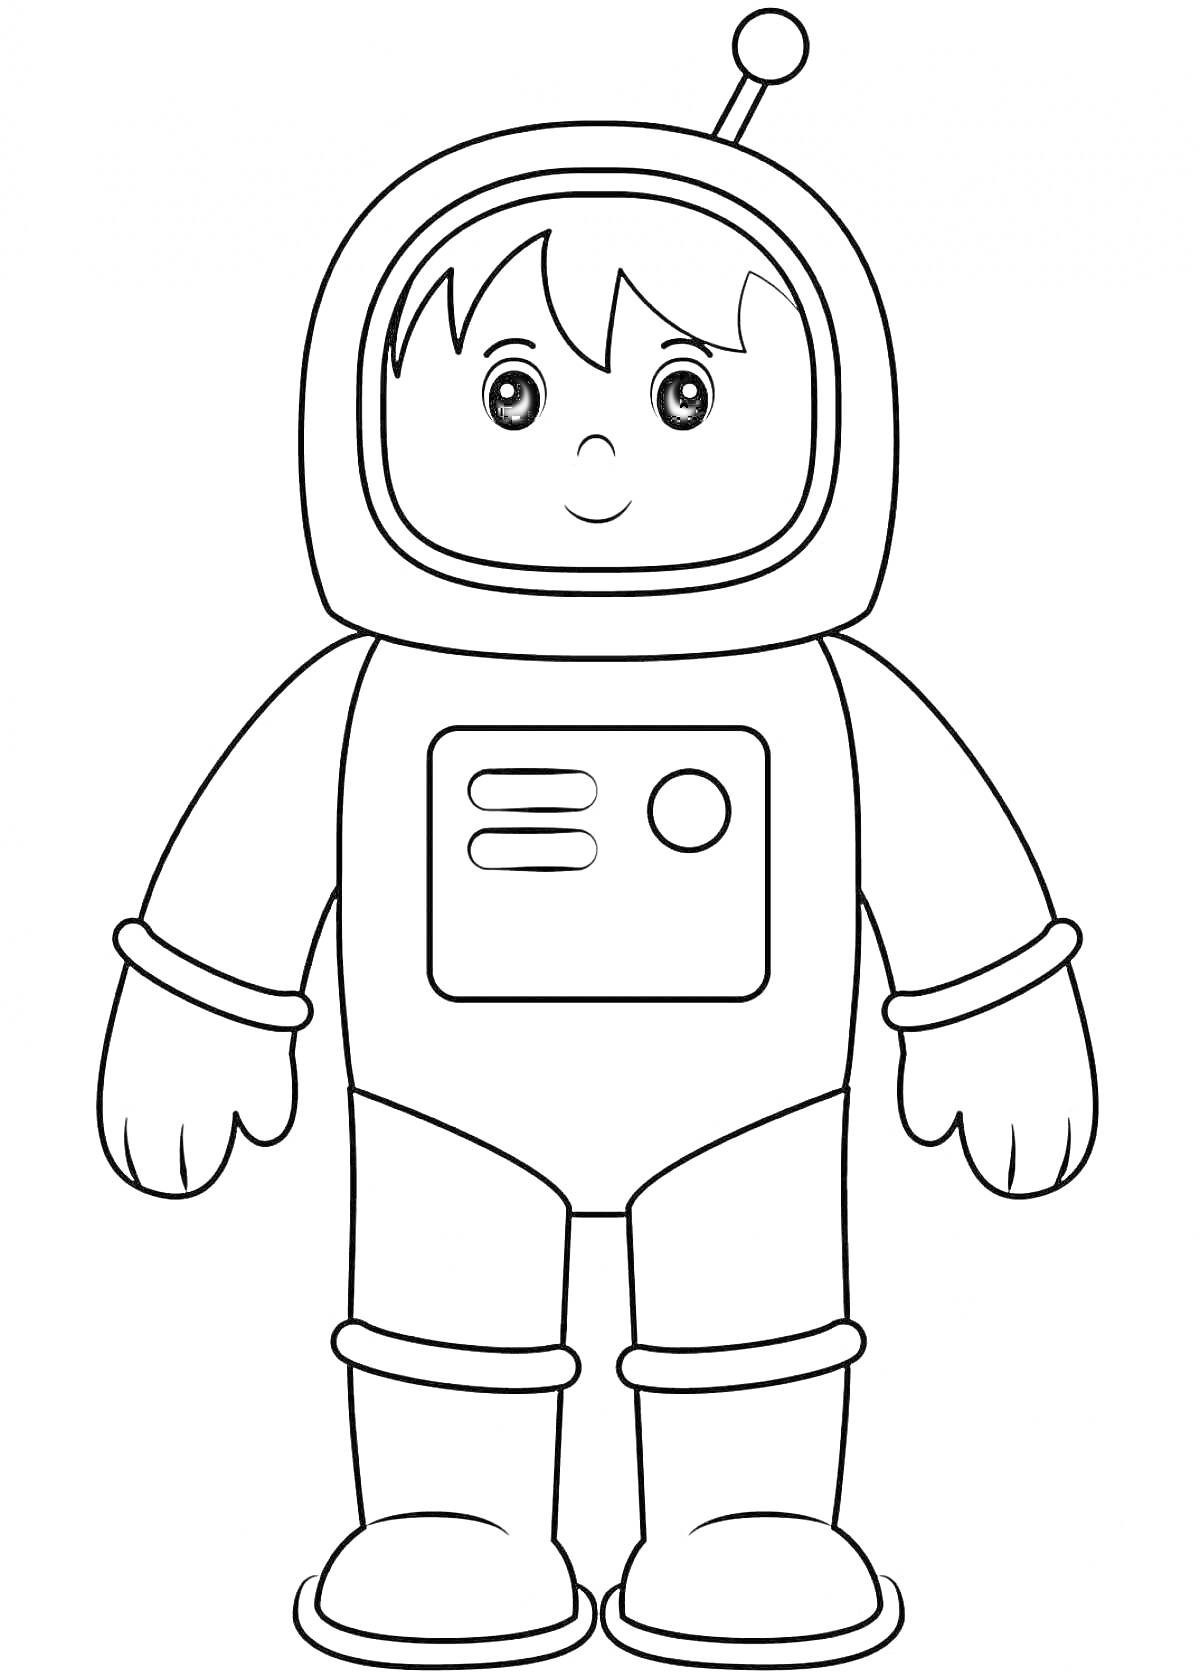 Раскраска Космонавт в скафандре с шлемом и антеннами, улыбающийся